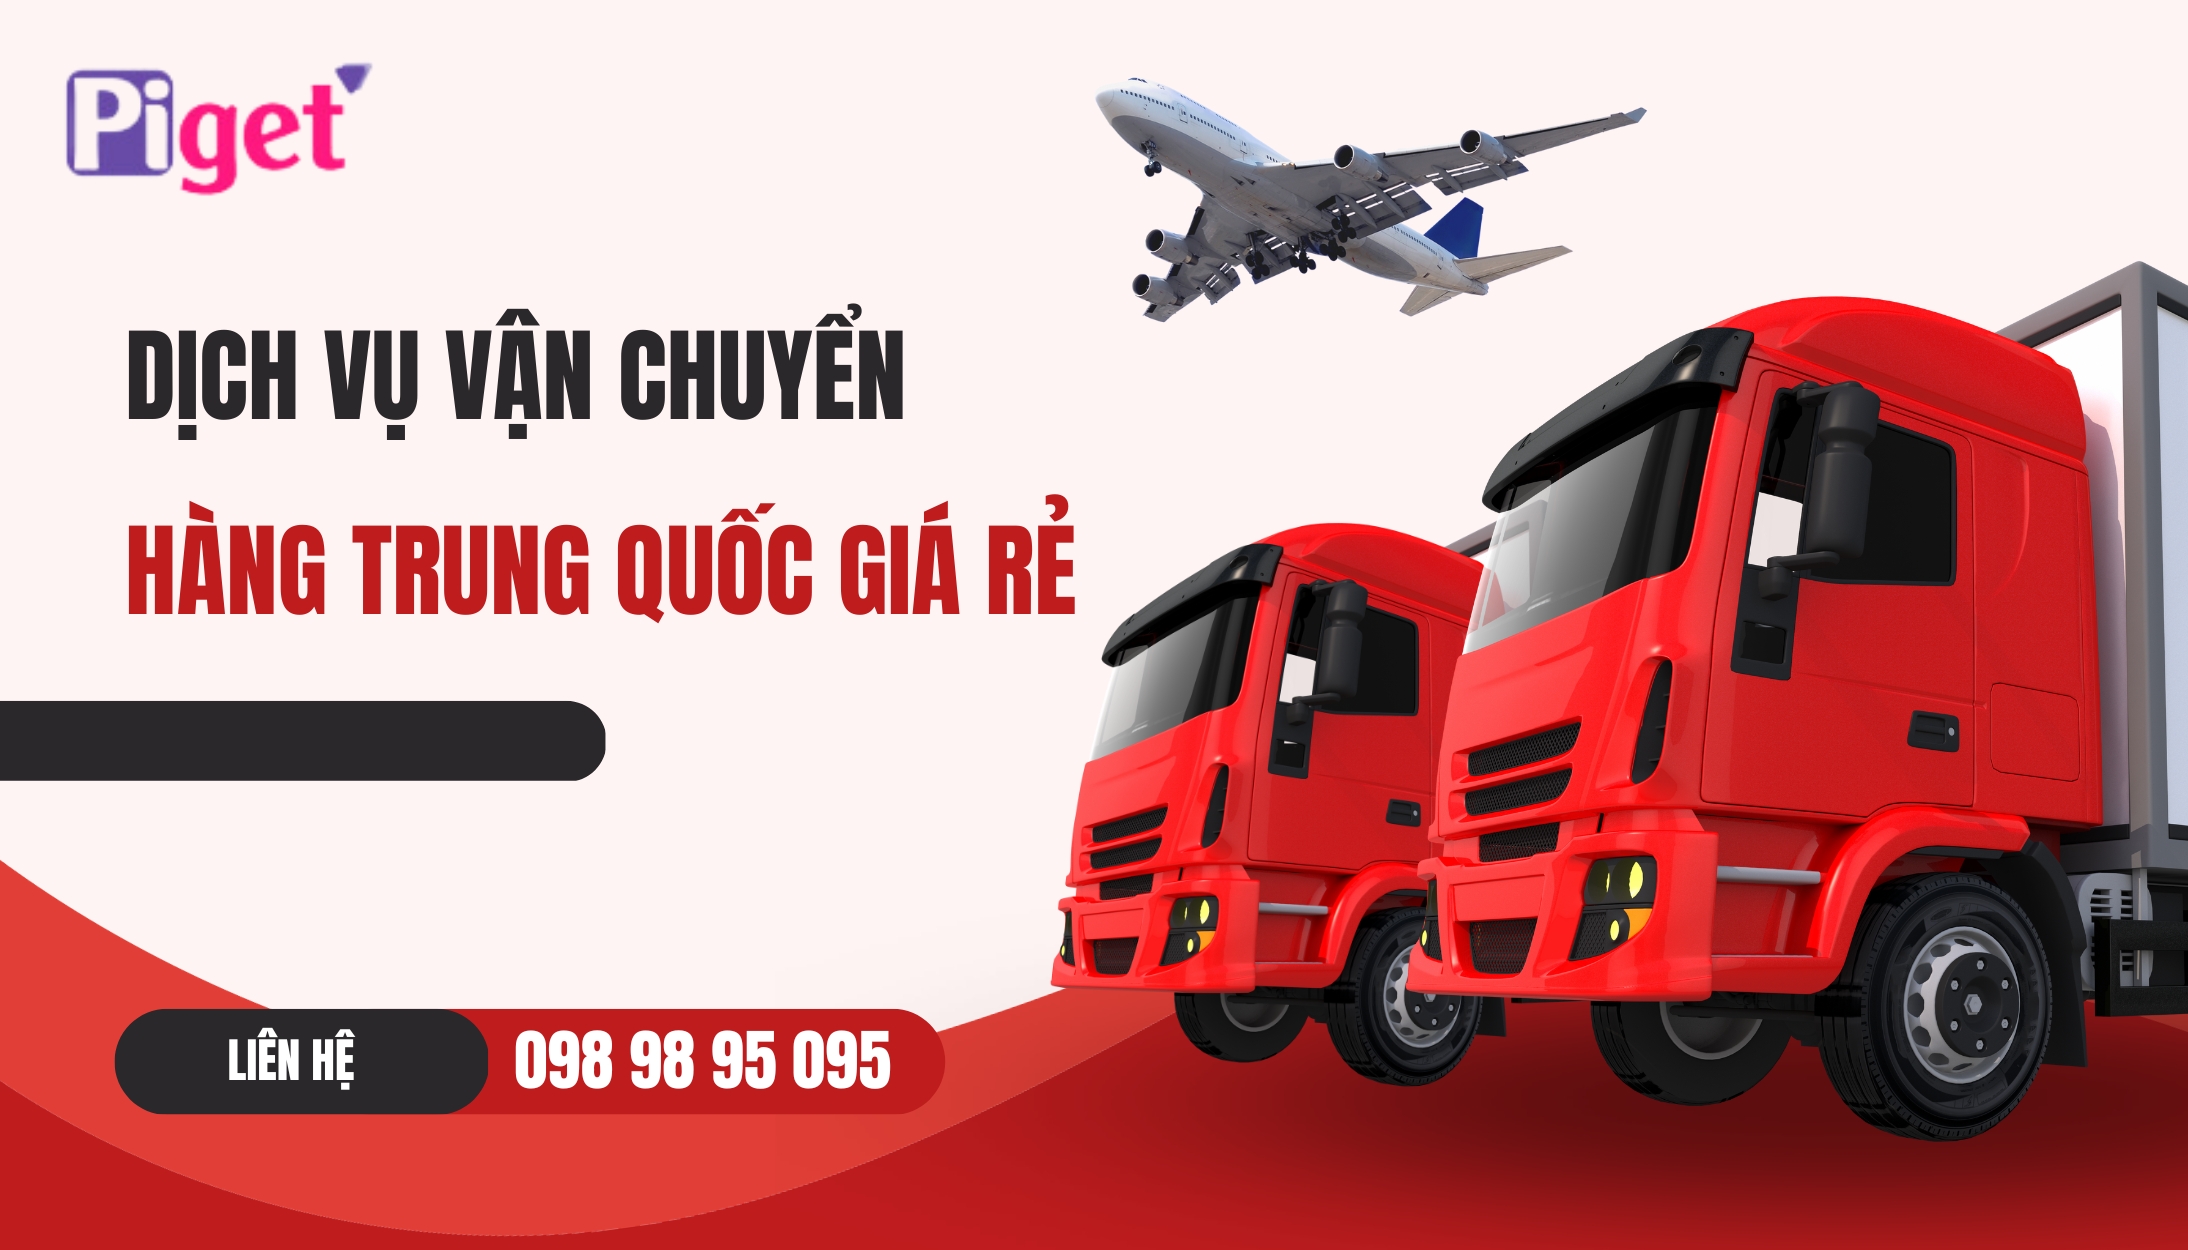 Dịch vụ chuyển hàng Trung Quốc giá rẻ tại Piget